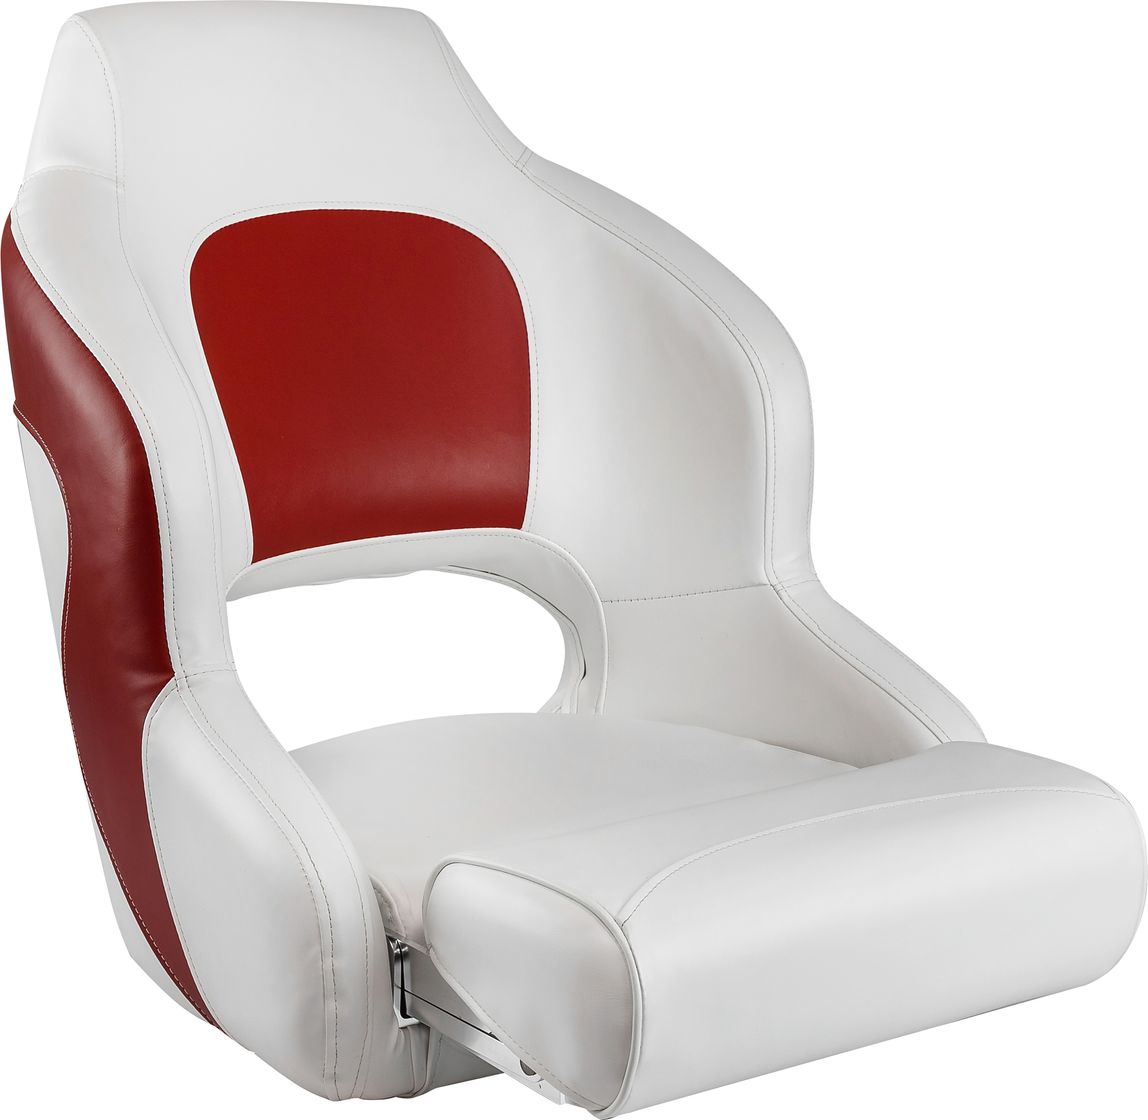 Кресло с болстером Premium Captain's Bucket, обивка винил, цвет белый/красный, Marine Rocket 75177WR-MR кресло для геймеров oklick 121g чёрный красный